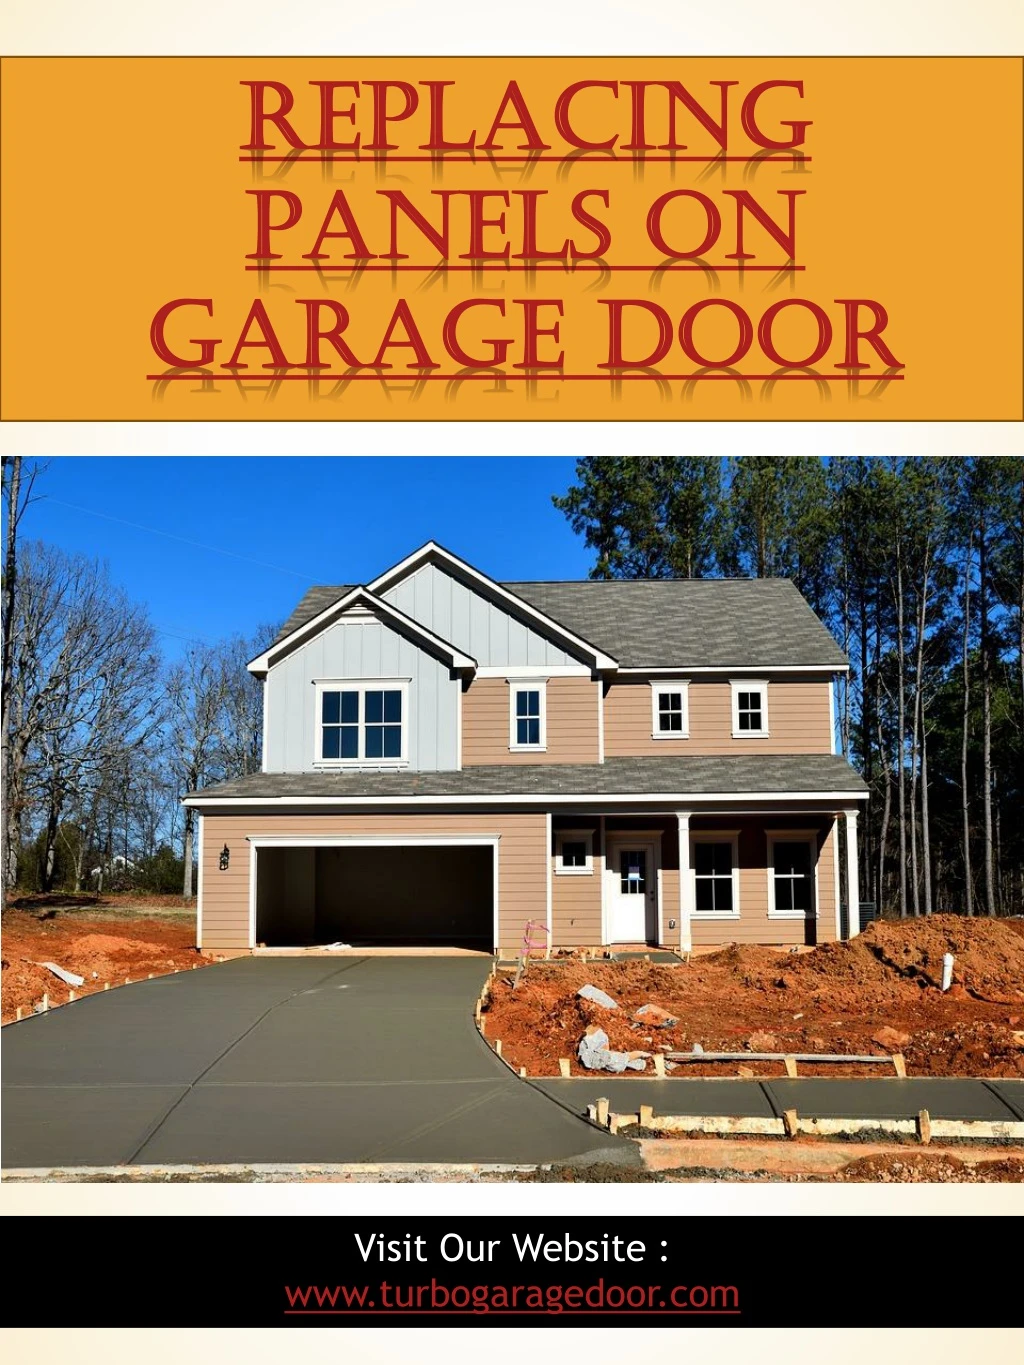 replacing panels on garage door